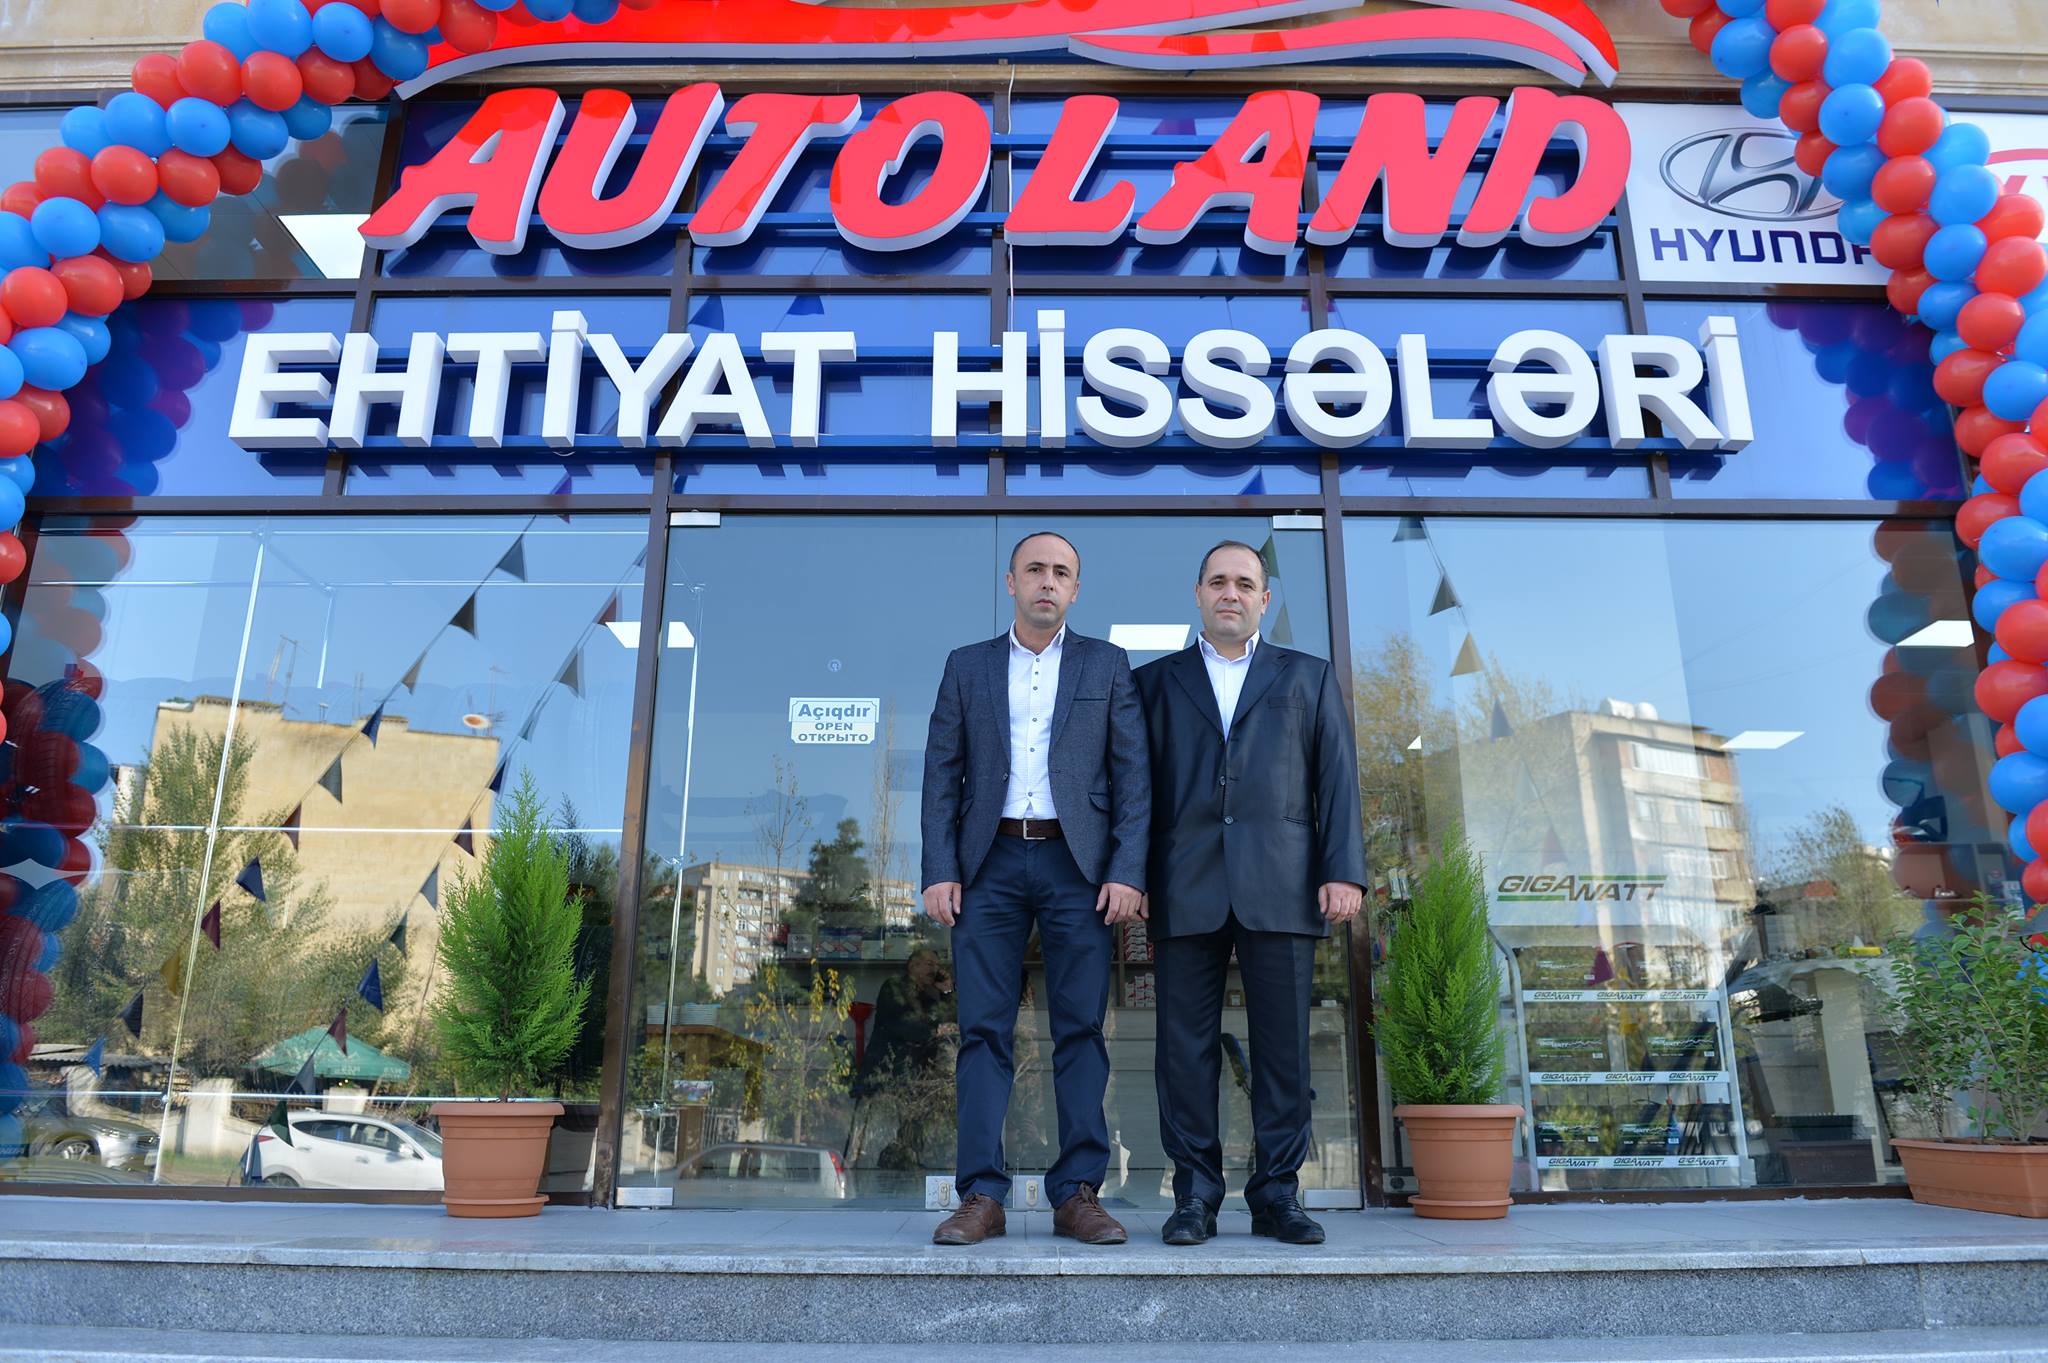 Yeni avtomobil ehtiyat hissələri mağazası açıldı – “Avto Land” – FOTOLAR